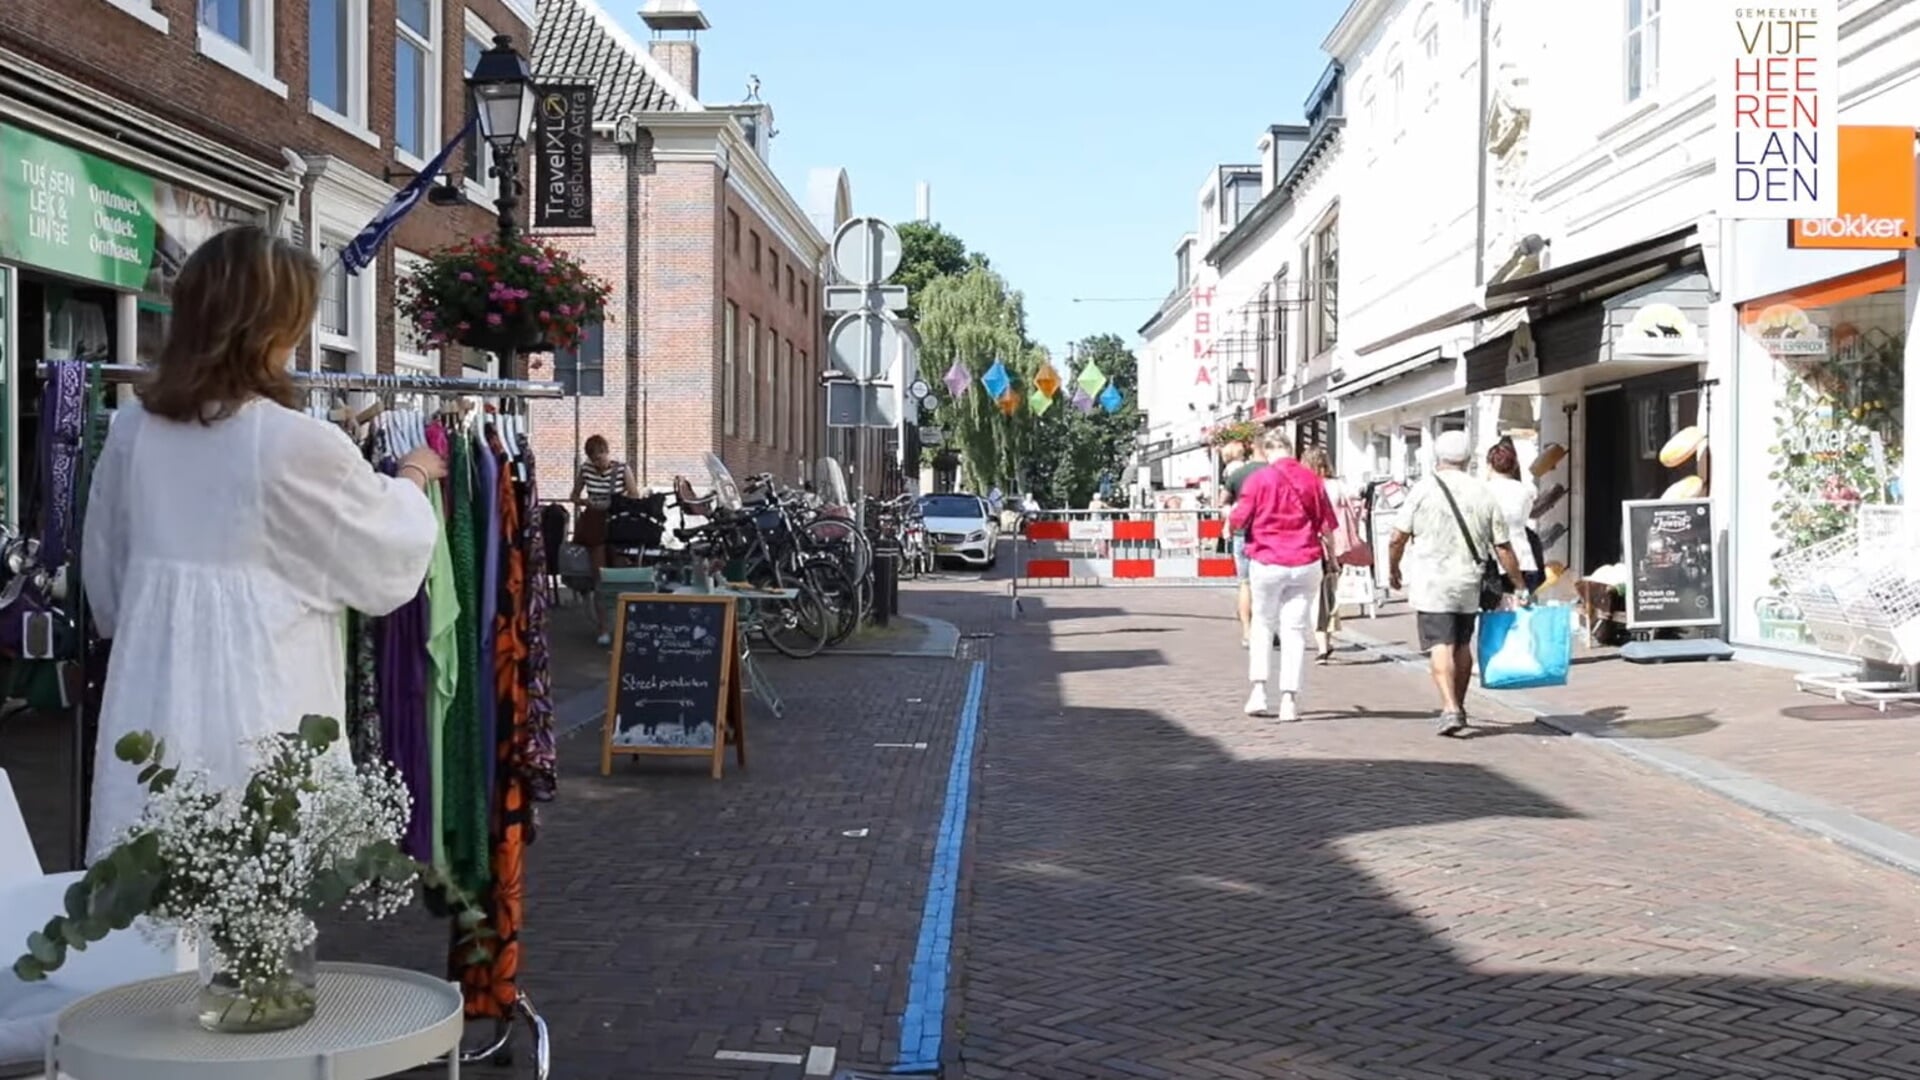 • De binnenstad van Leerdam.